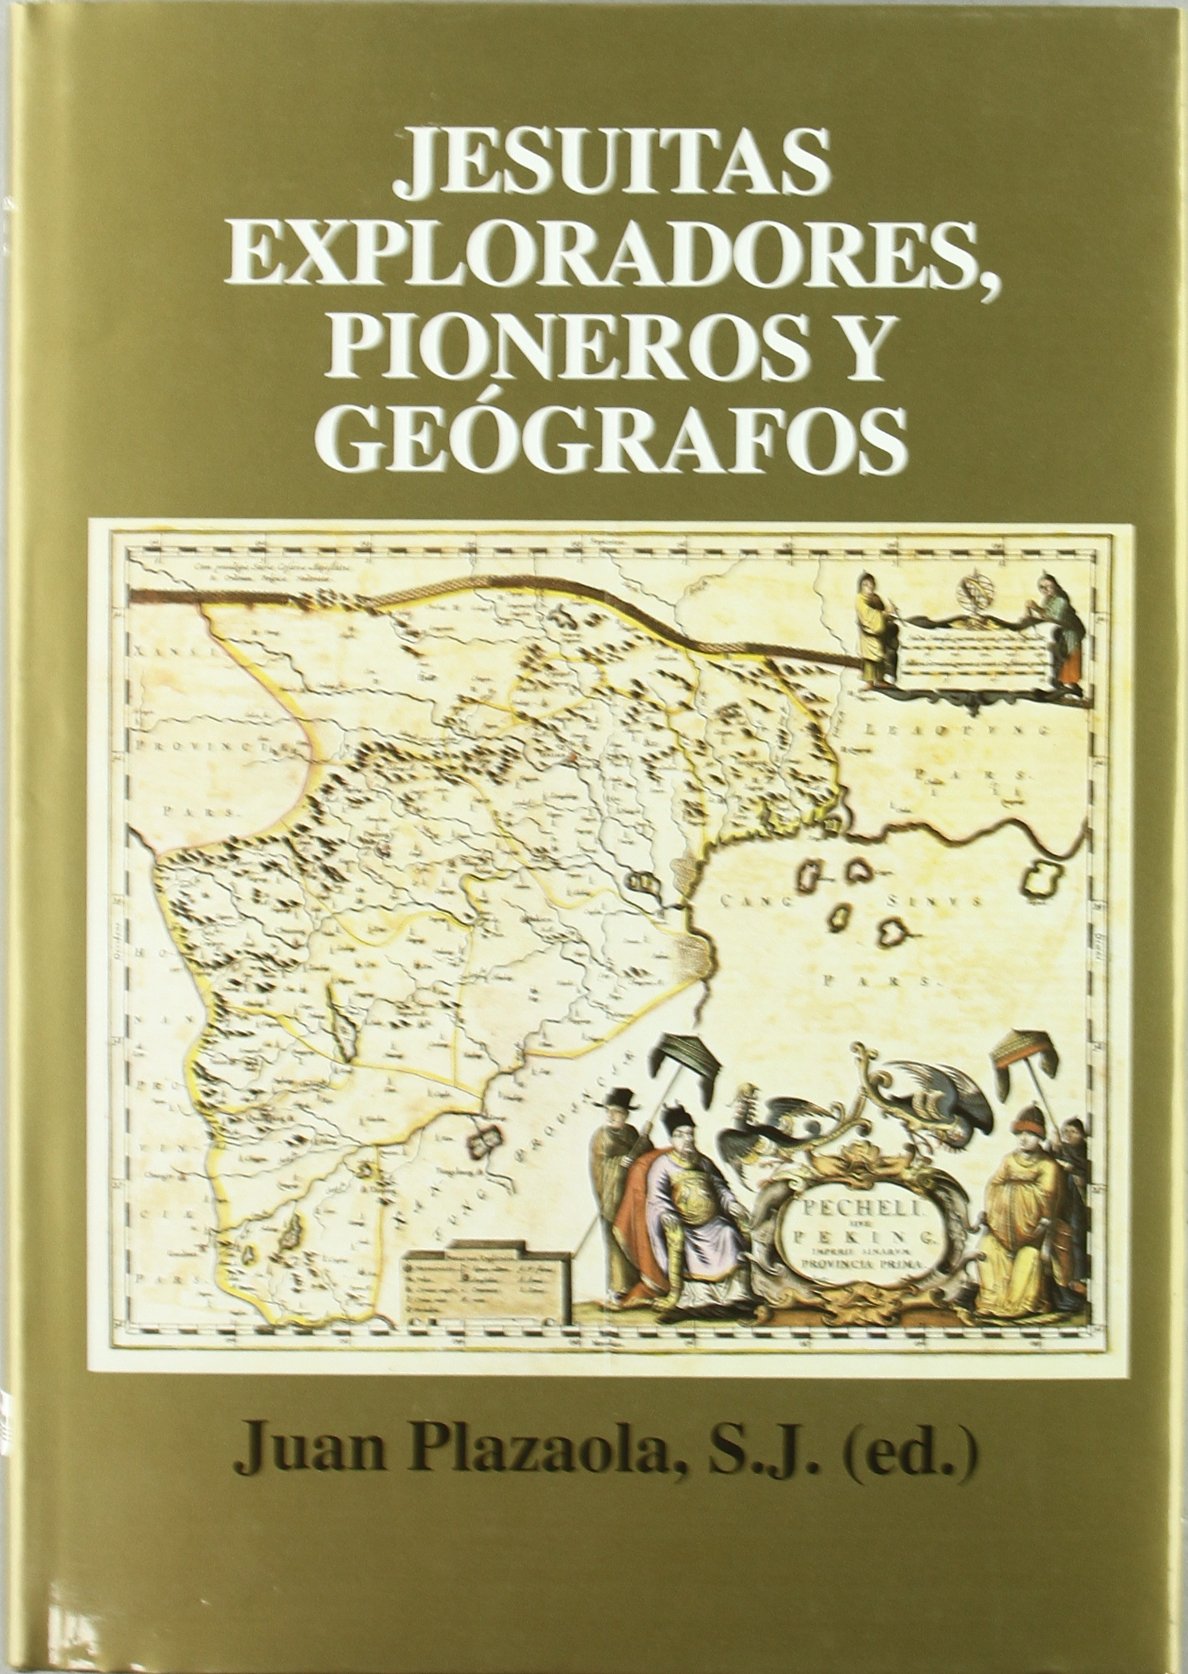 Imagen de portada del libro Jesuitas exploradores, pioneros y geógrafos